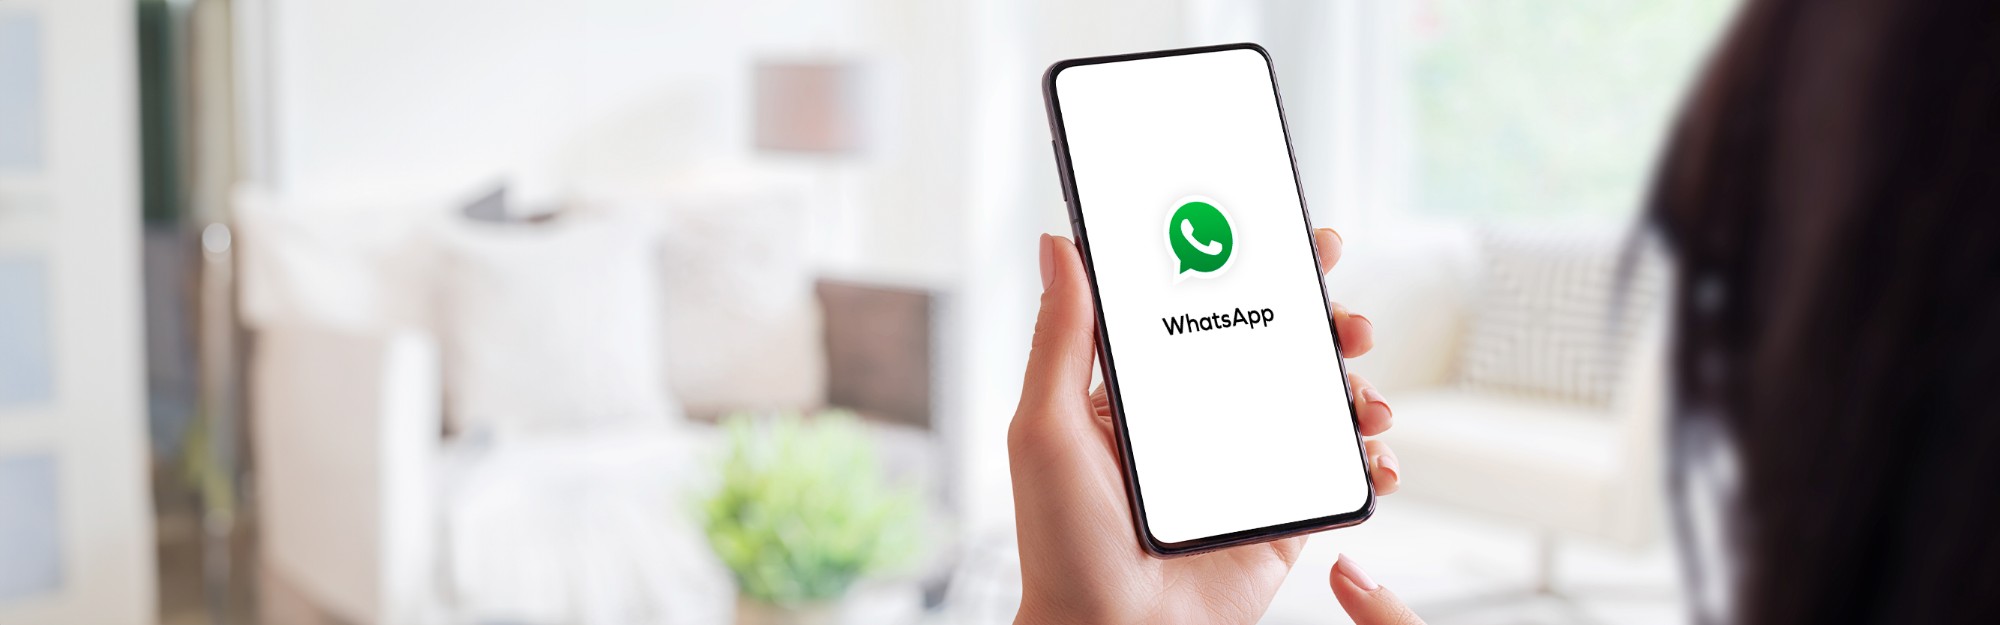 Gå med i den nya WhatsApp-sändningskanalen från Mediaelx för fastighetsmäklare